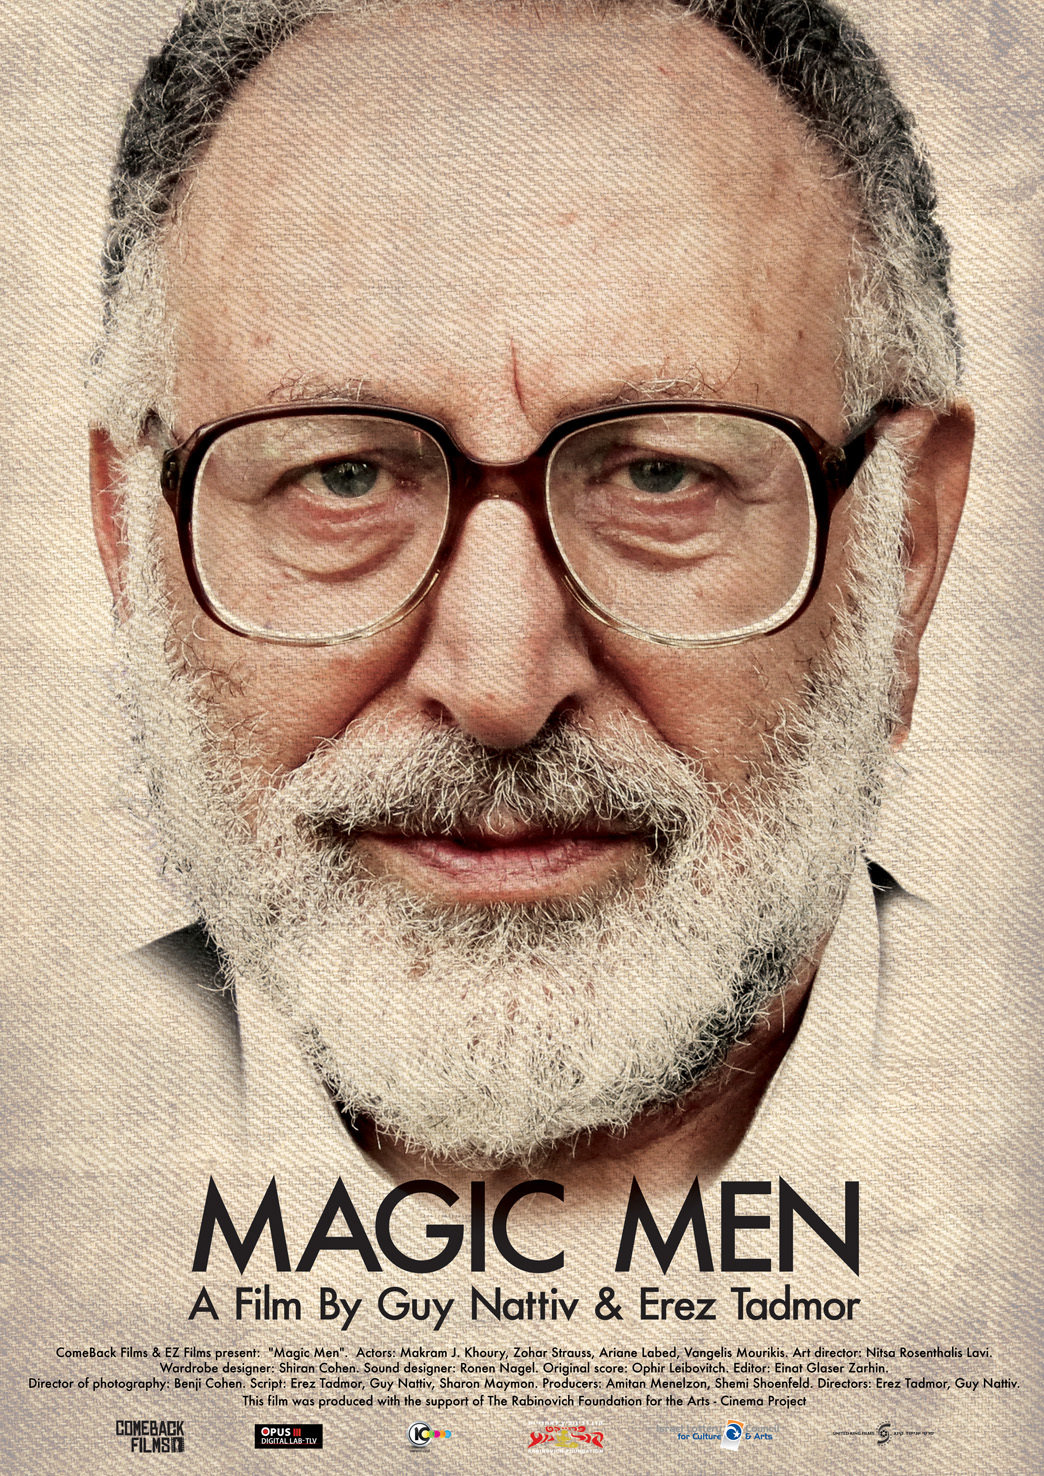 Magic Men (2014) Screenshot 1 